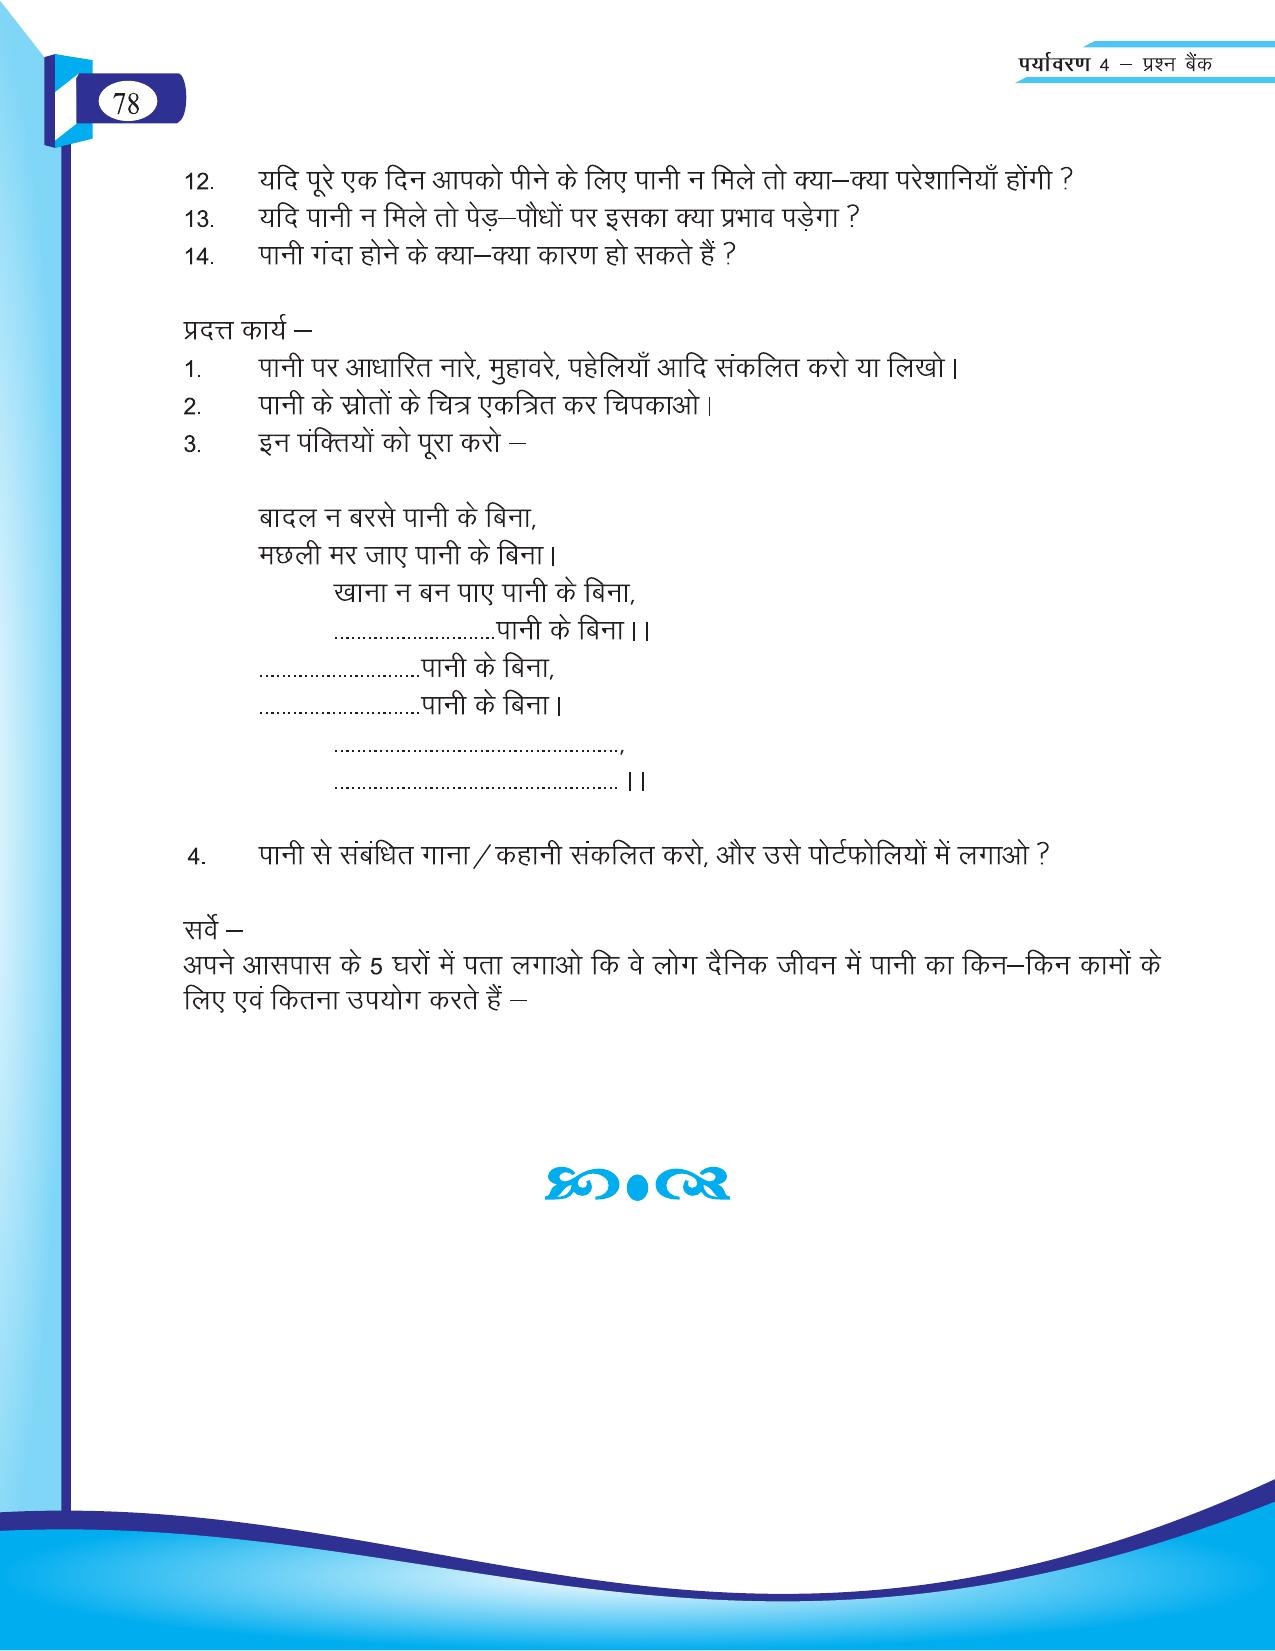 Chhattisgarh Board Class 4 EVS Question Bank 2015-16 - Page 7